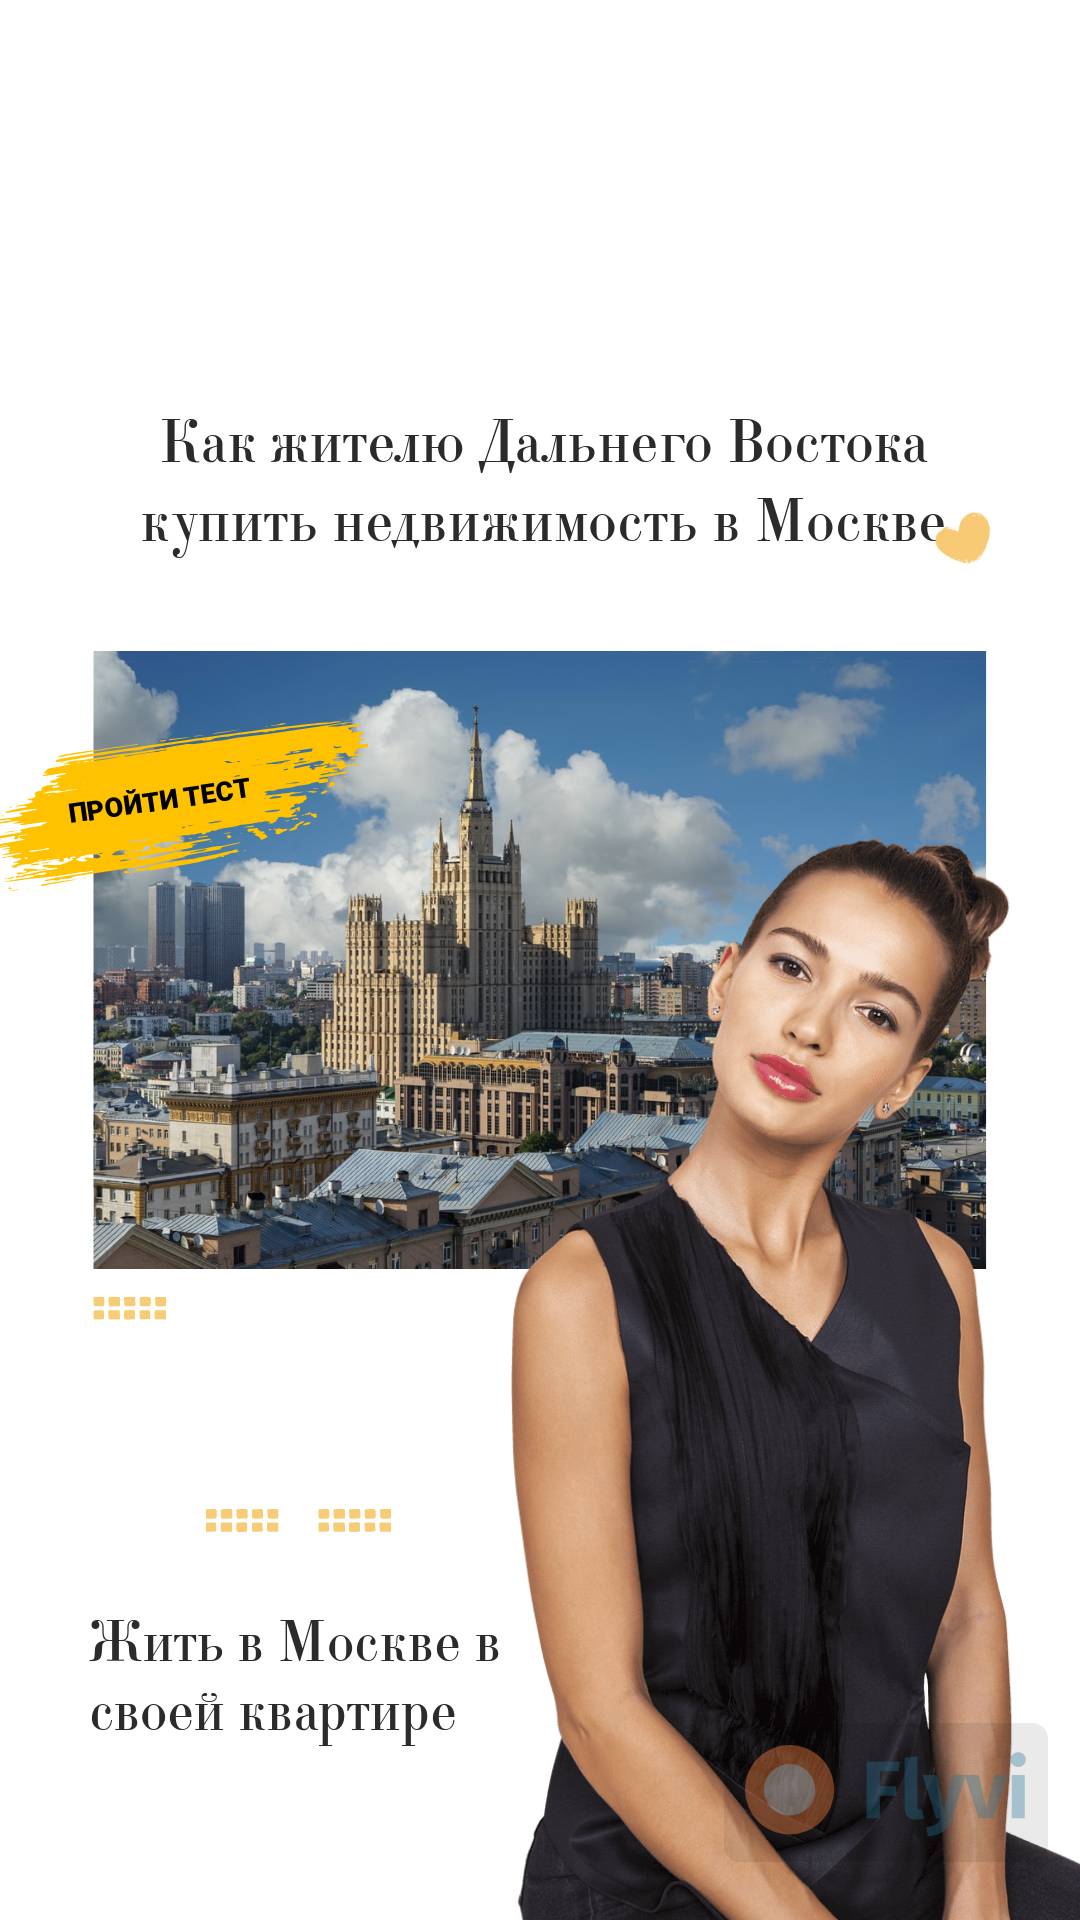 Готовая сторис для личного блога как купить недвижимость в Москве с кнопкой пройти тест для подписчиков